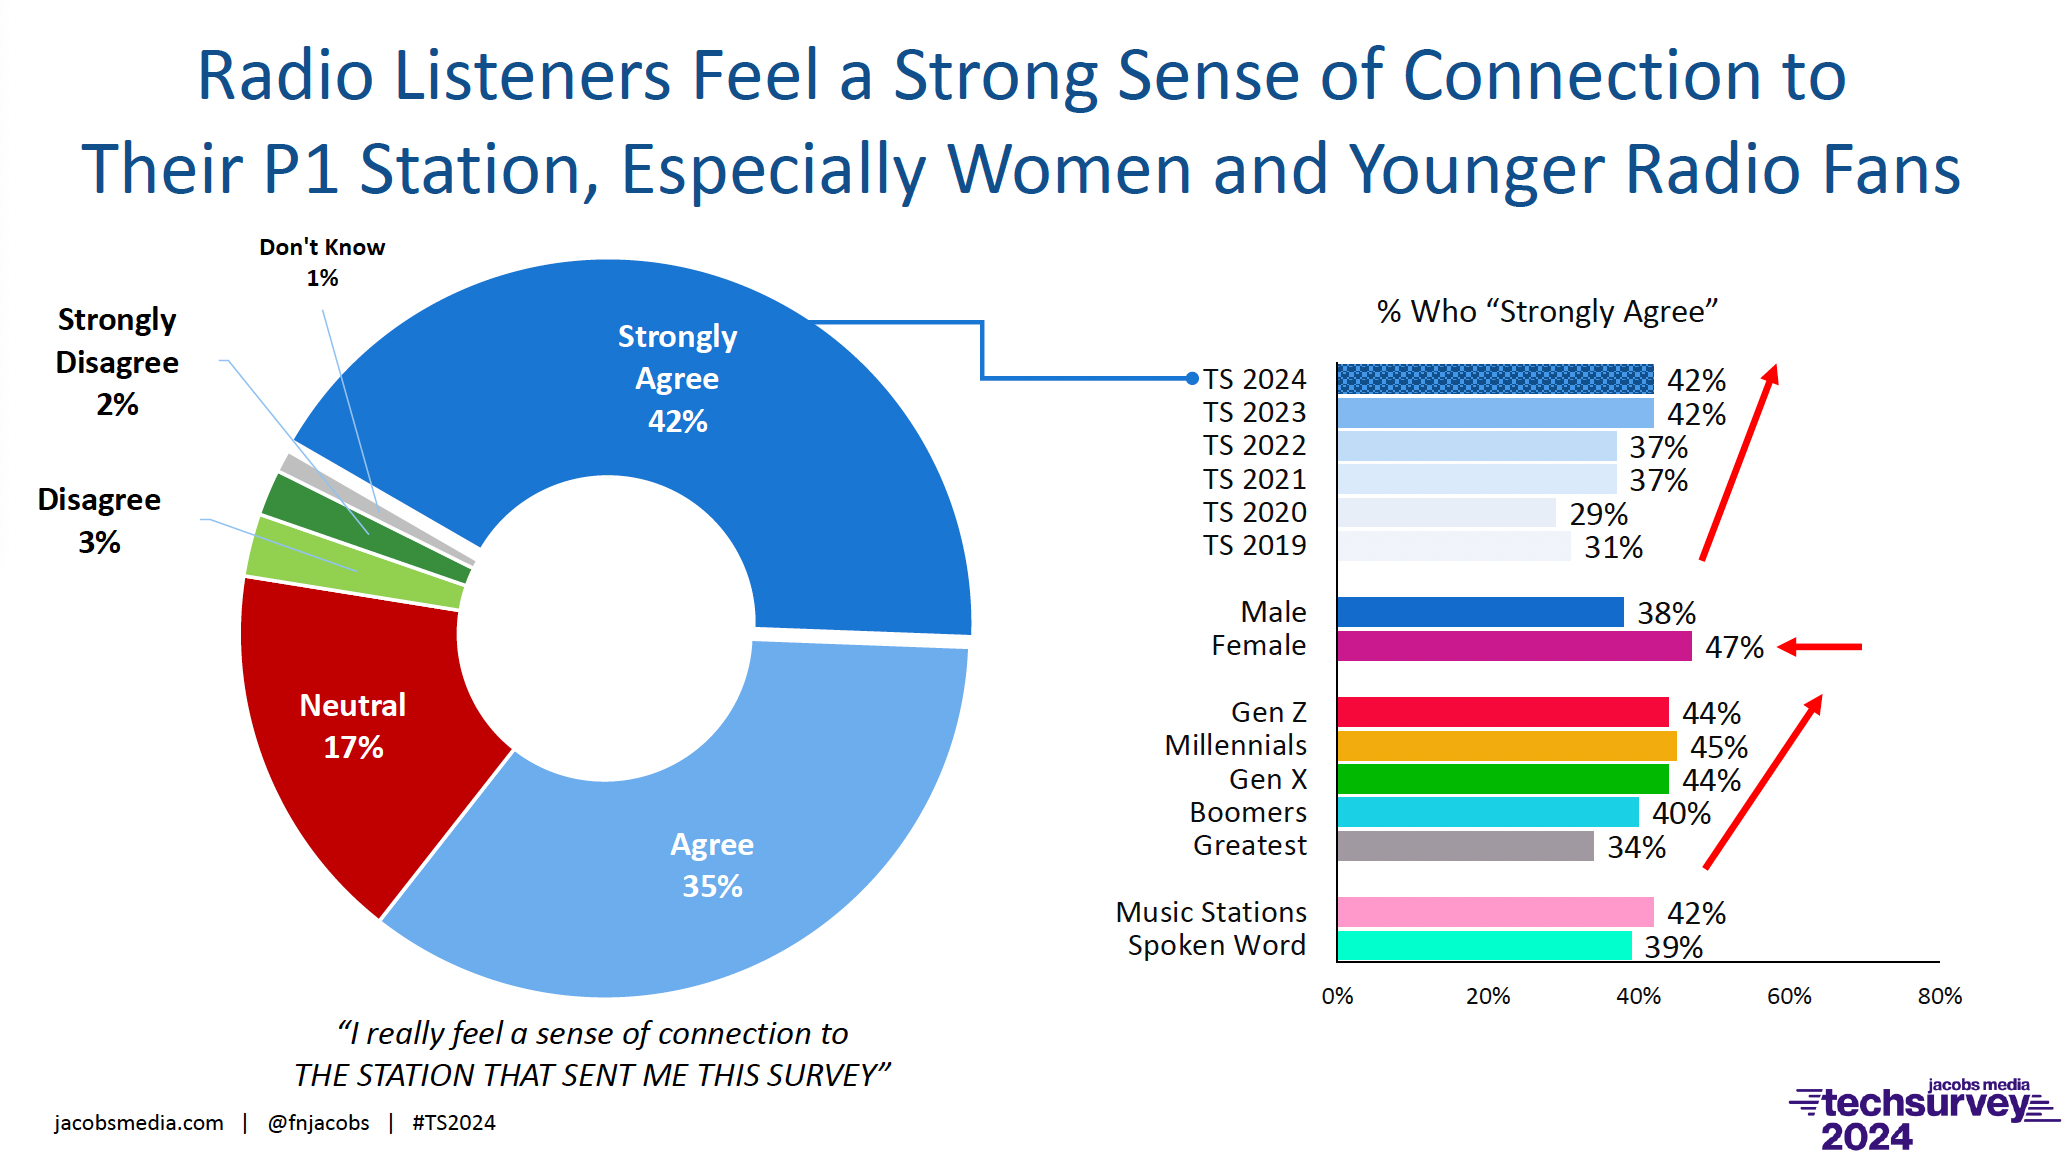 Les auditeurs de radio se sentent fortement liés à leur station P1, en particulier les femmes et les jeunes amateurs de radio.